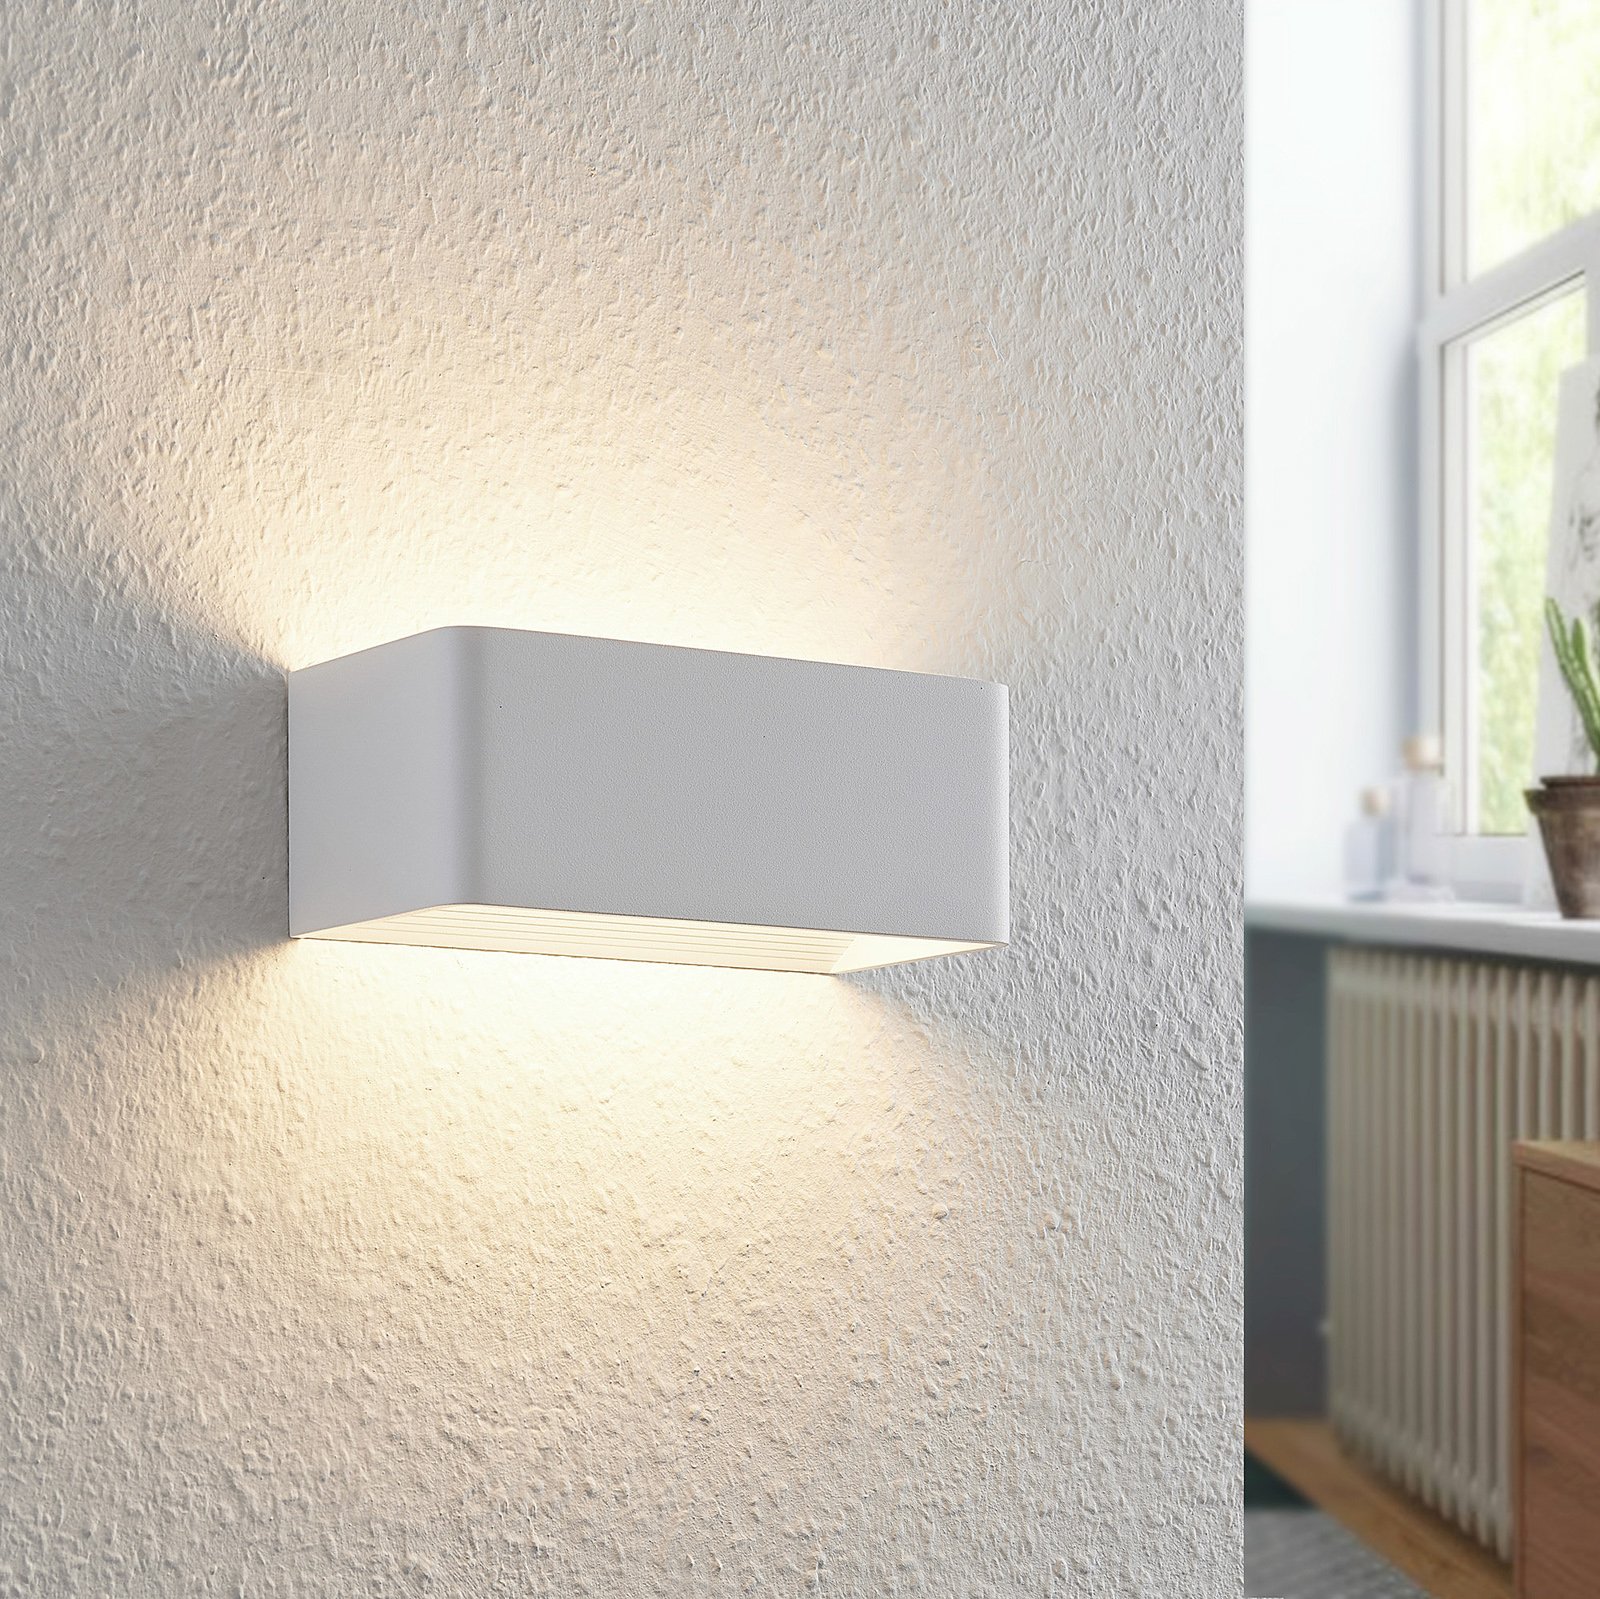 Arcchio Karam applique LED, 20 cm, bianco